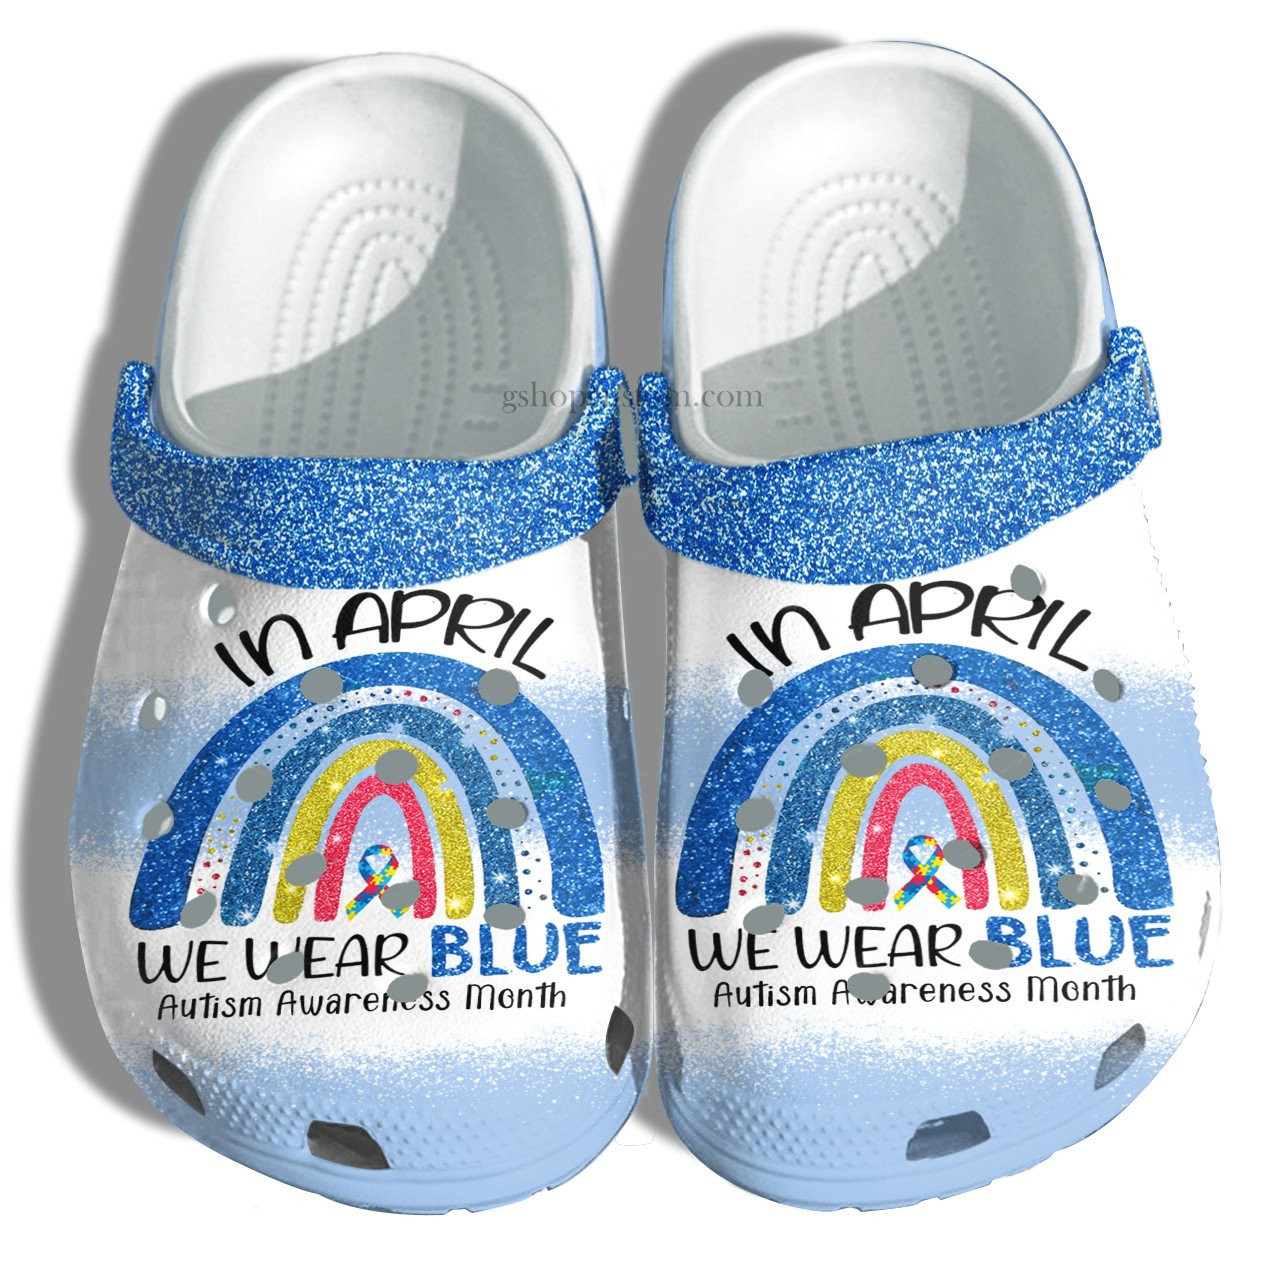 Rainbow Blue In April We Wear Blue Crocs Shoes - Autism Awareness Shoes Croc Clogs